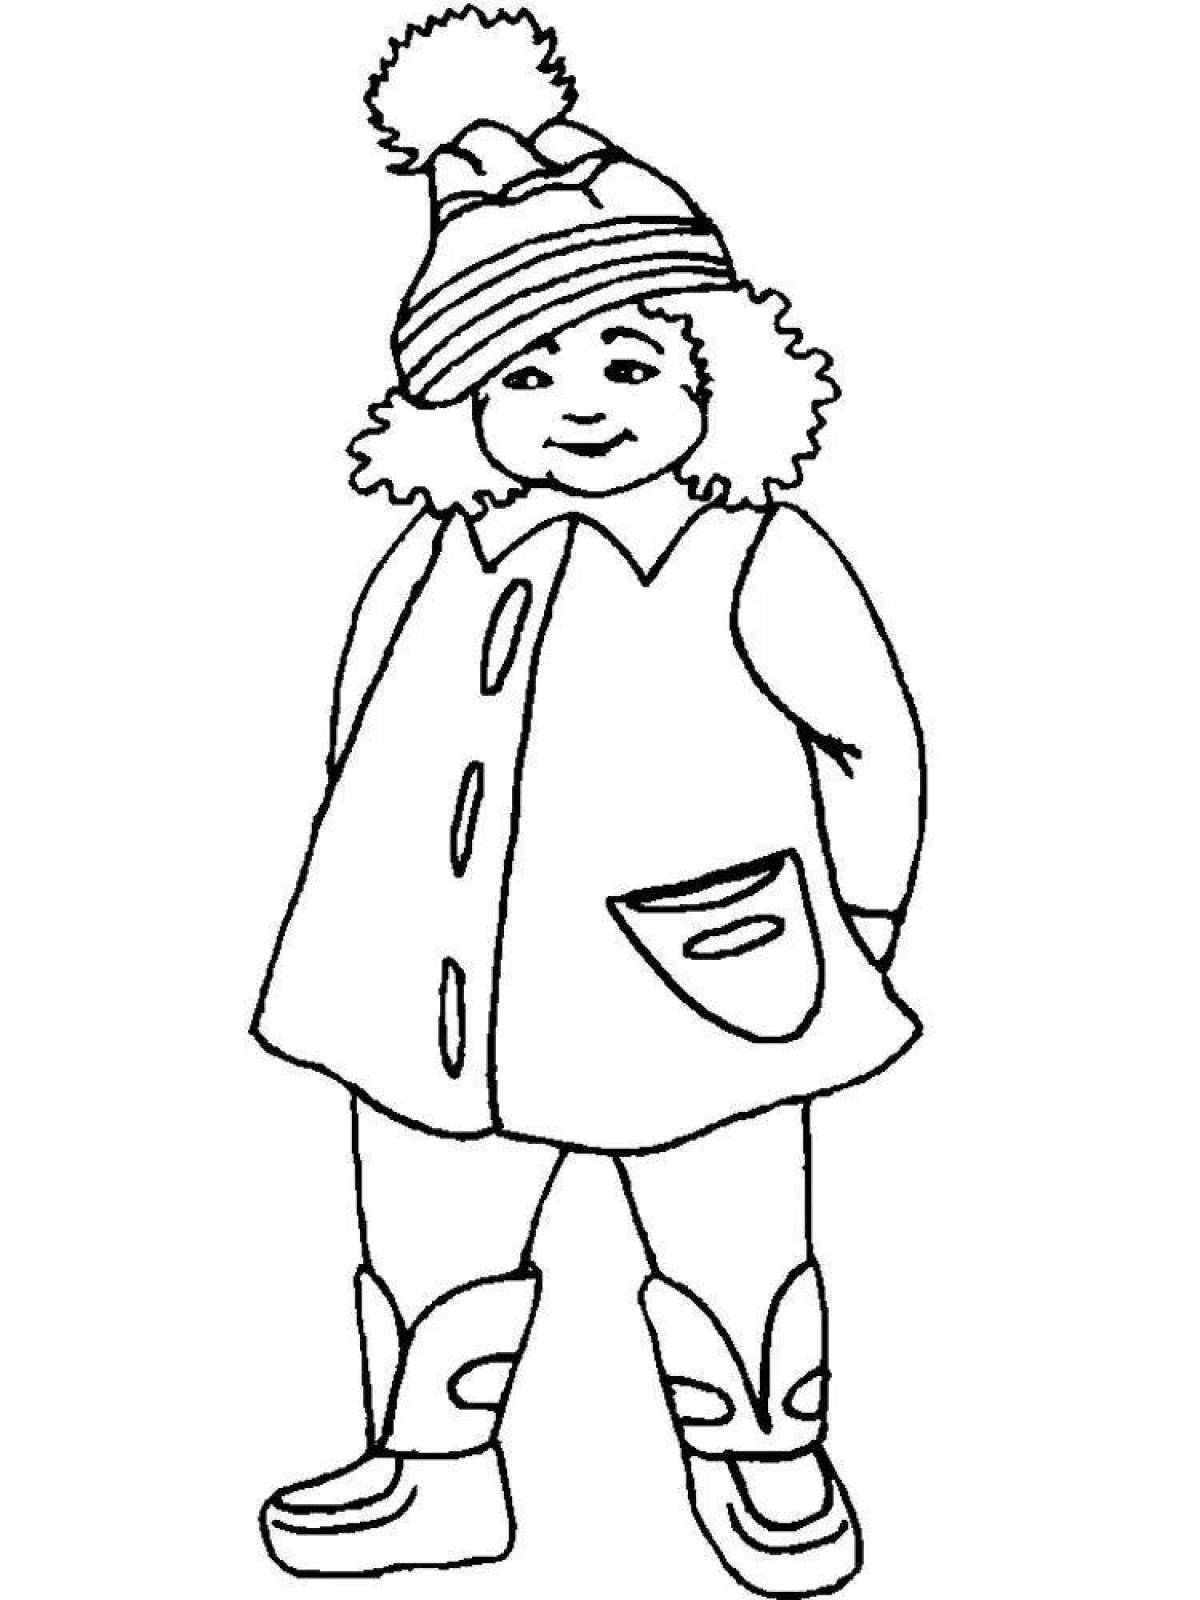 Хихикающий ребенок в зимней одежде